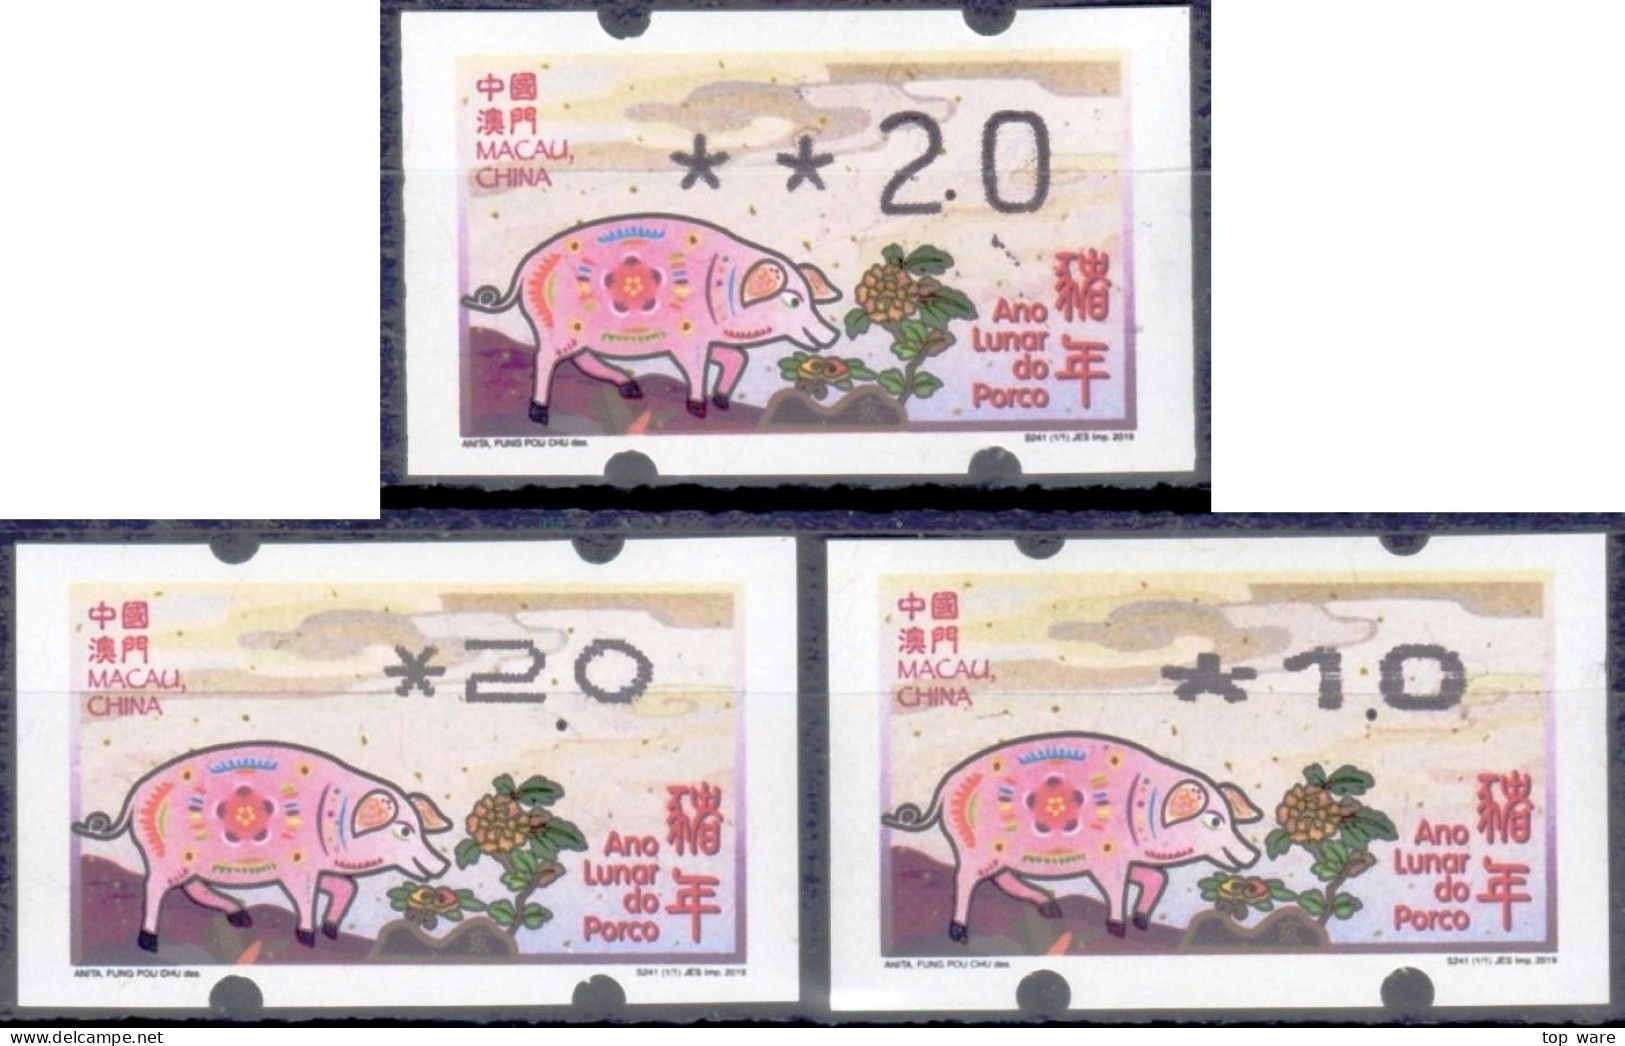 2019 Chine Macau ATM Stamps Année Du Cochon Pig / Tous Types D'imprimantes Klussendorf Nagler Newvision Automatenmarken - Distributors